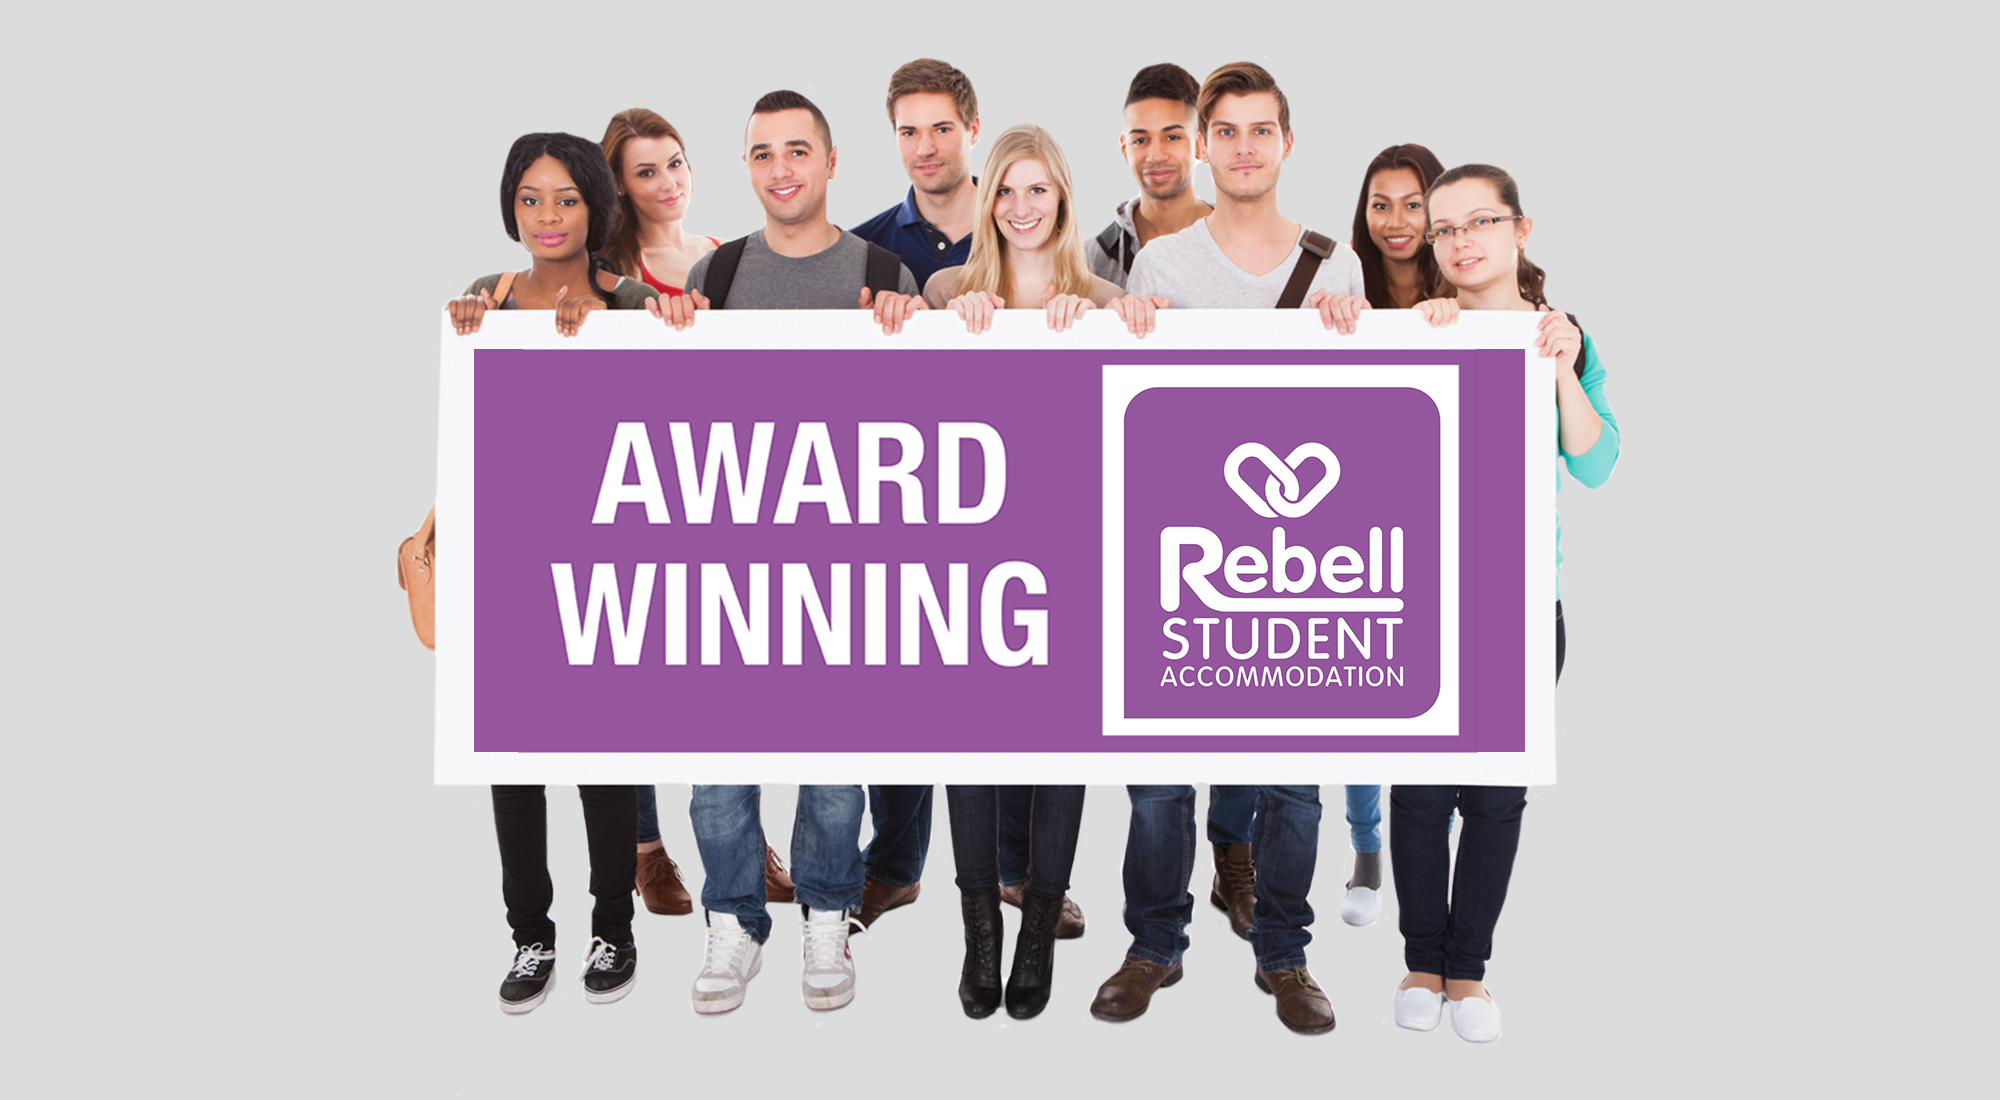 Award Winning | Rebell Student Accommodation